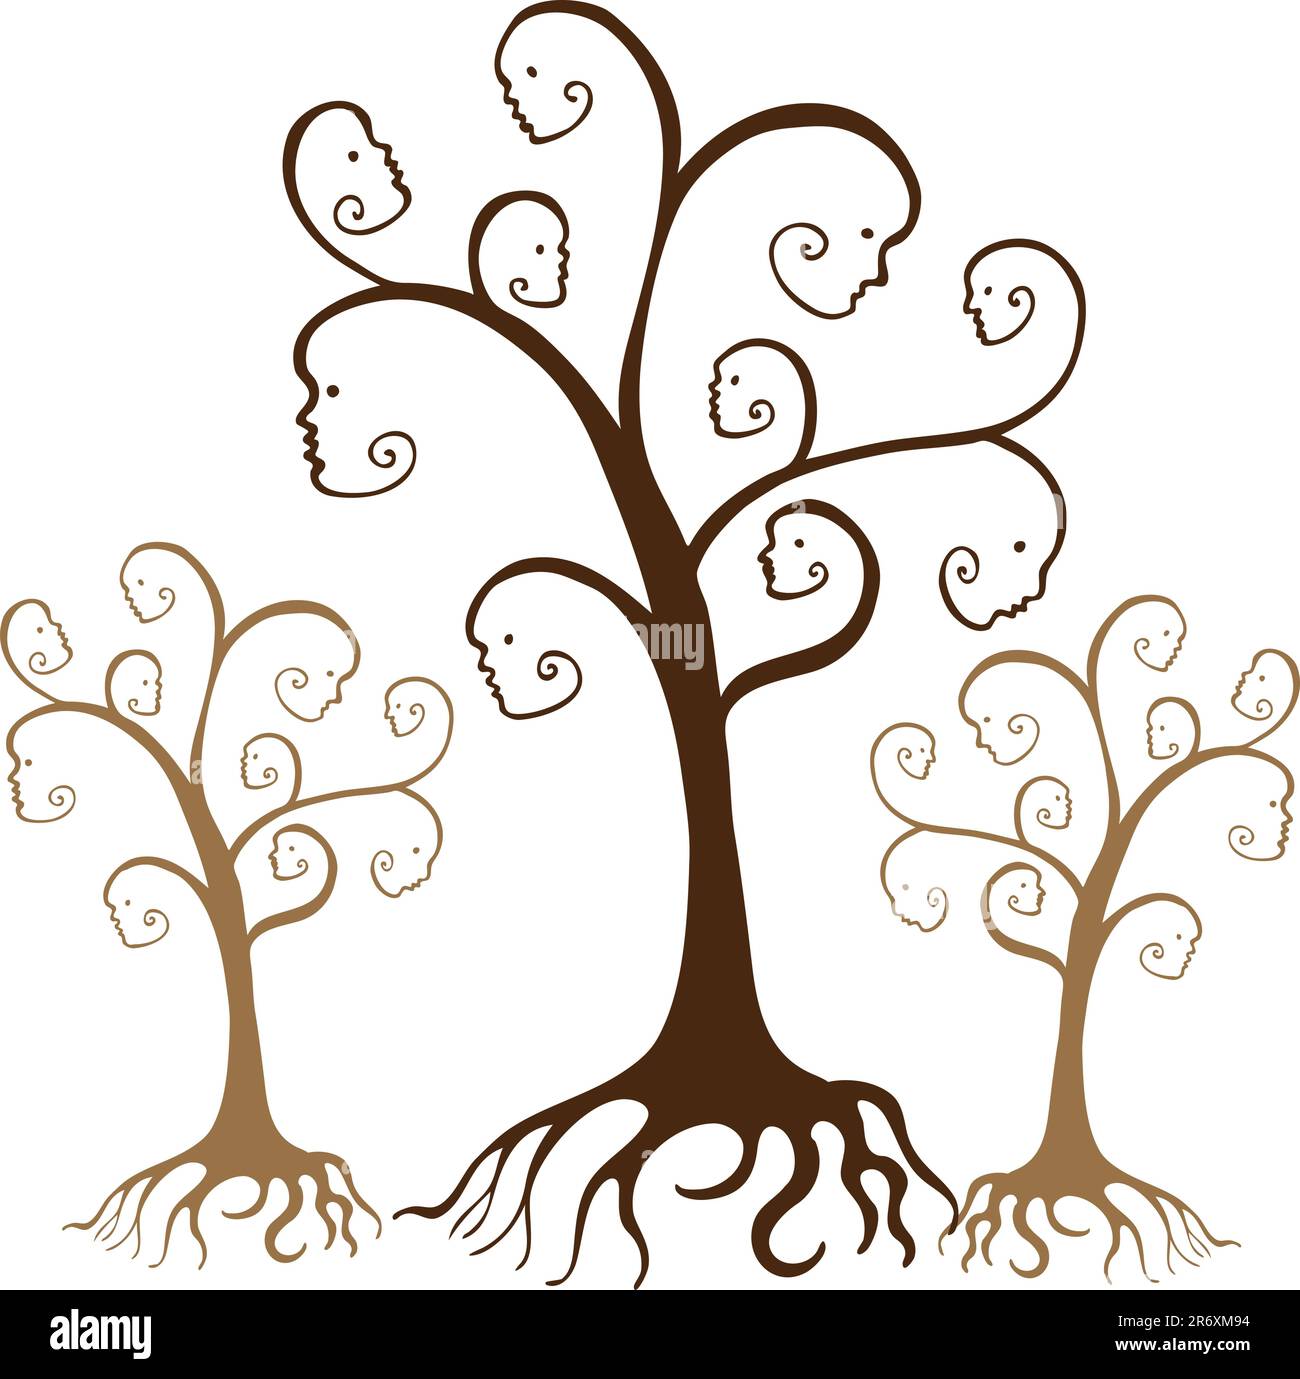 L'albero genealogico è isolato su uno sfondo bianco. Illustrazione Vettoriale